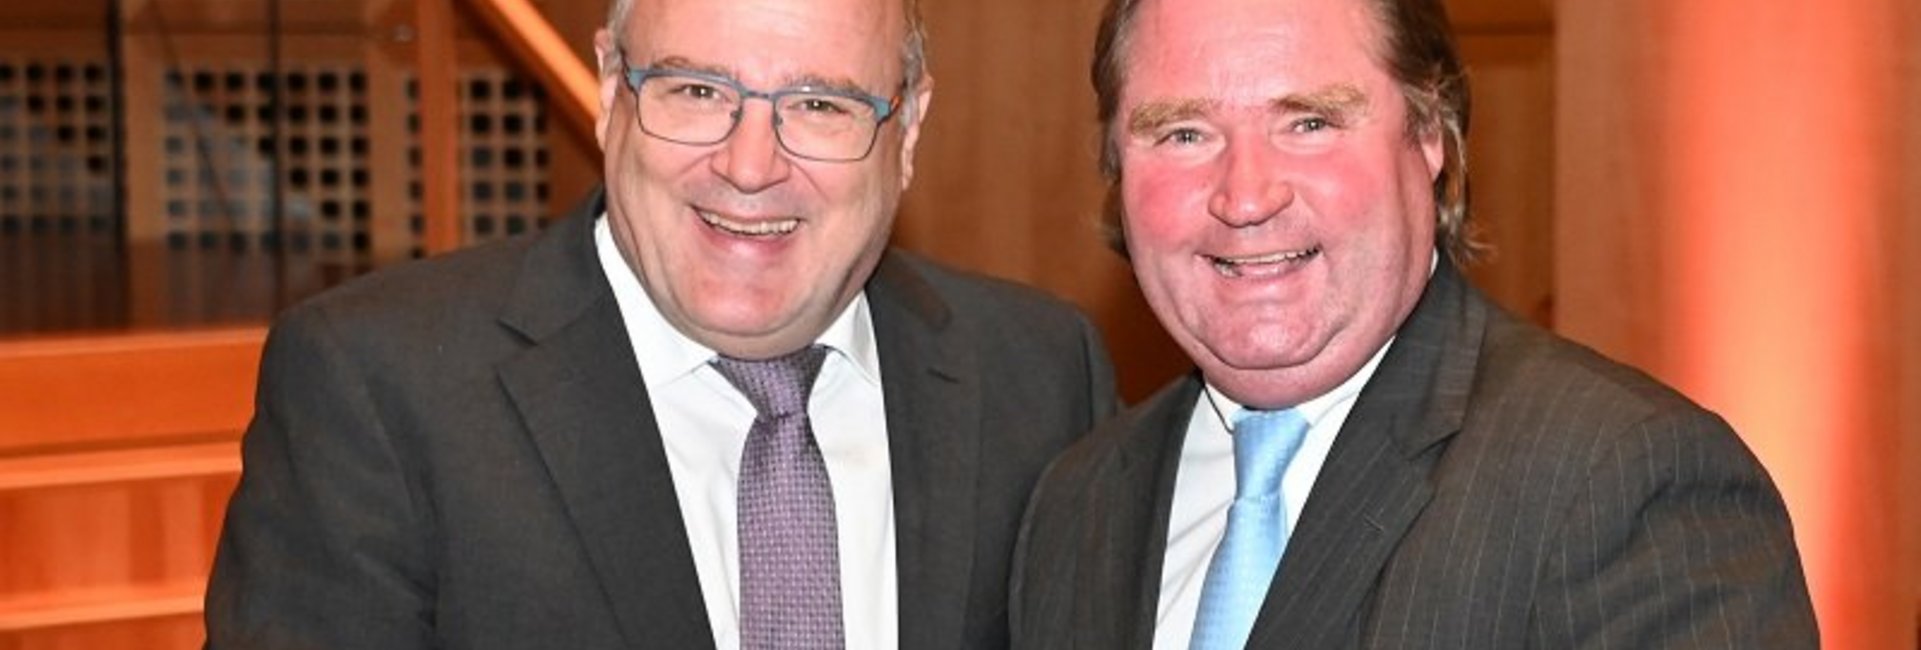 BDA-Hauptgeschäftsführer Steffen Kampeter (l.) mit NRW-Finanzminister Lutz Lienenkämper